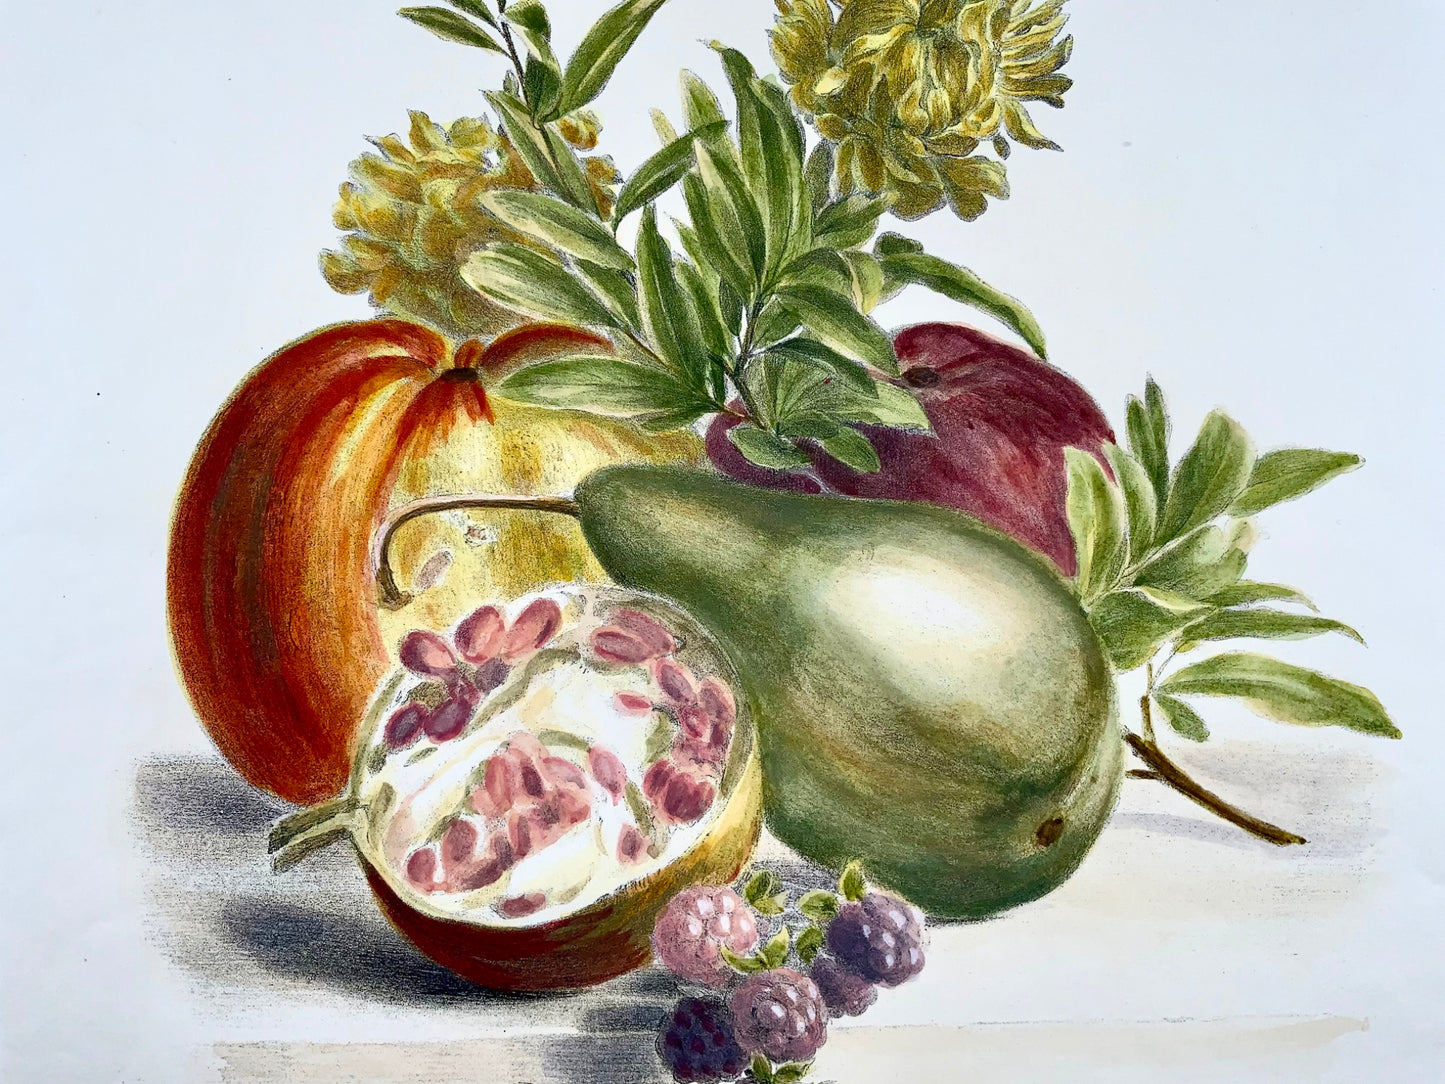 1836 A. Weiss; Desguerrois - Fine Bouquet of Fruit - original hand colour